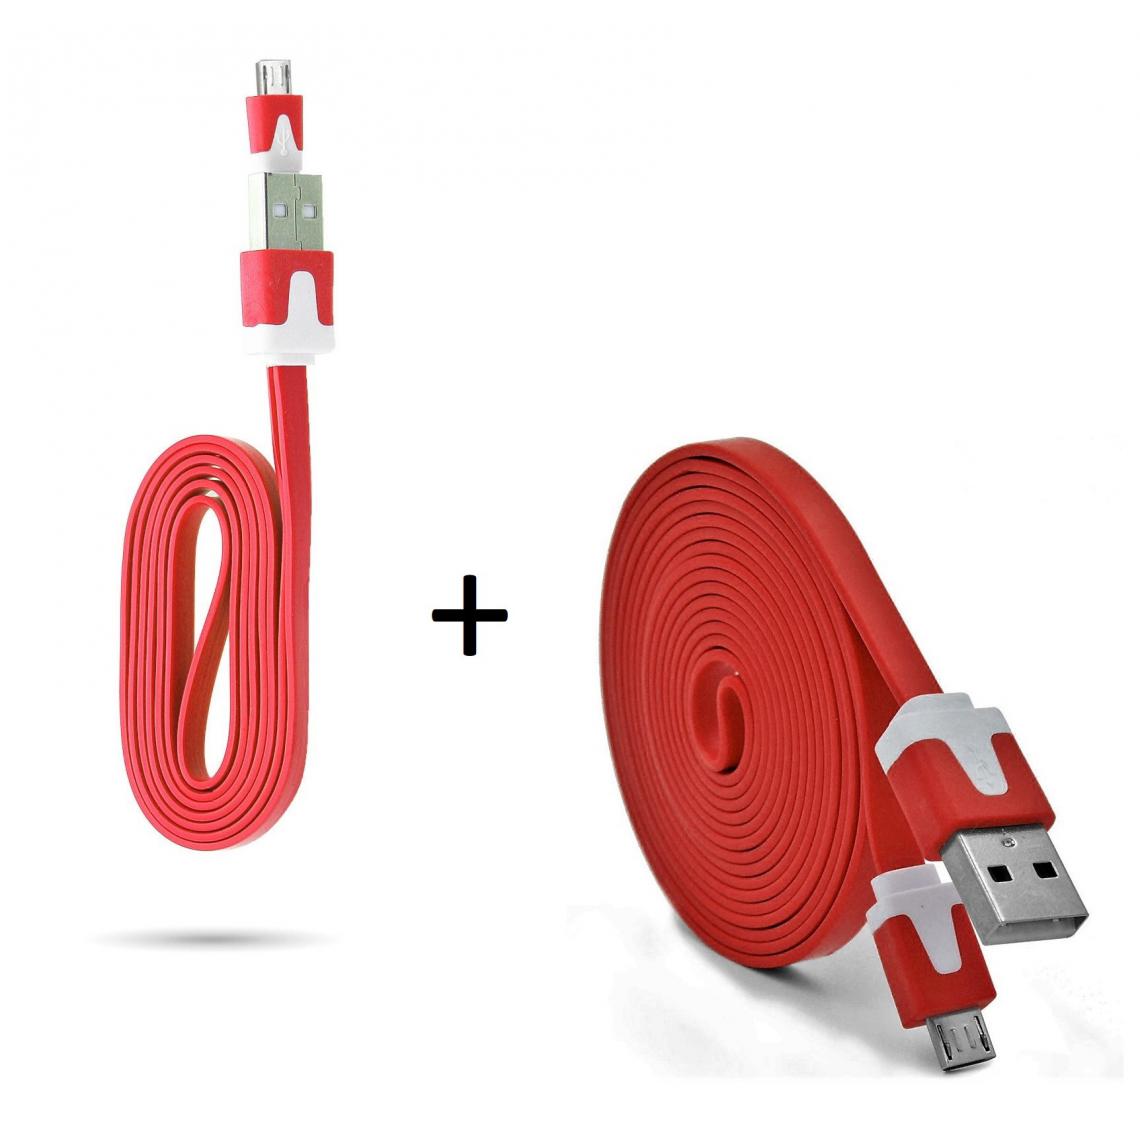 Shot - Pack Chargeur pour JBL CLIP 3 Smartphone Micro USB (Cable Noodle 3m + Cable Noodle 1m) Android (ROUGE) - Chargeur secteur téléphone